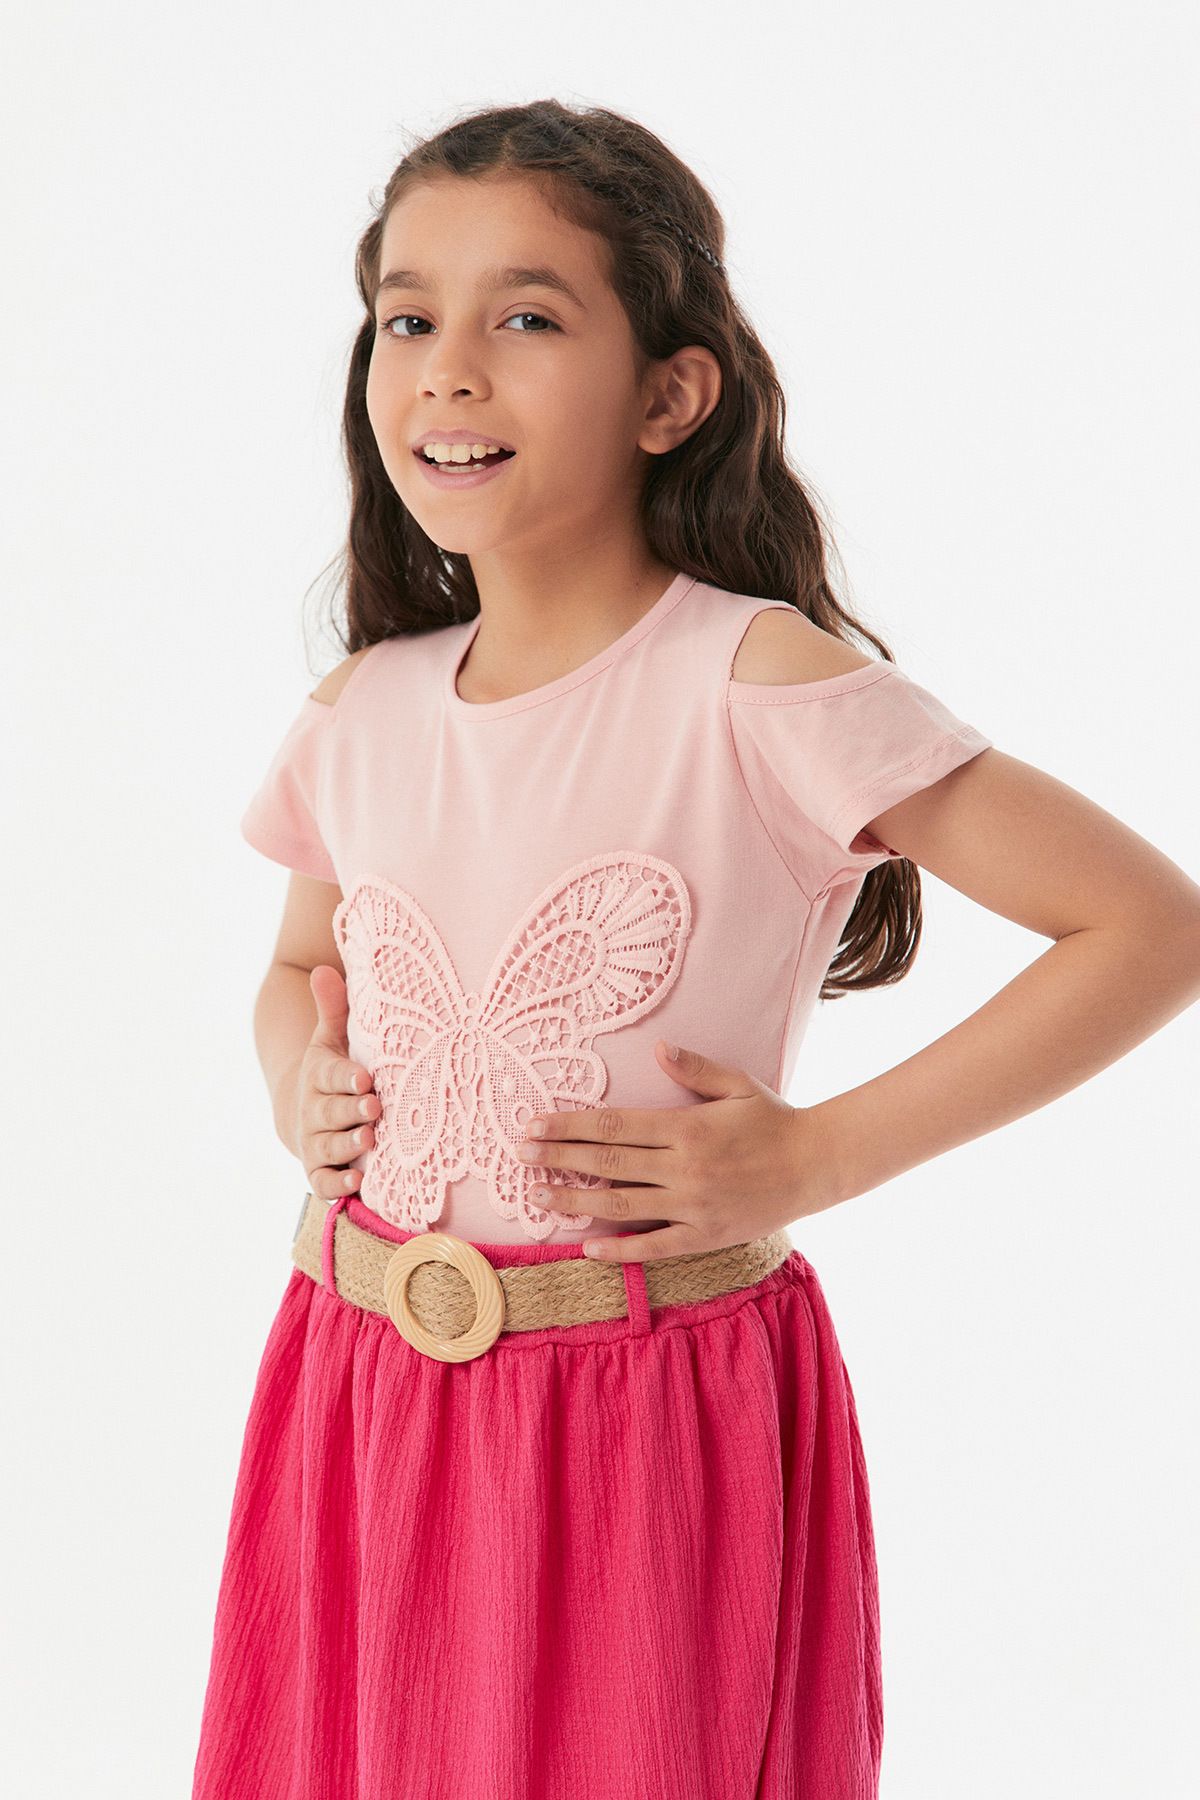 Fullamoda Kelebek Işlemeli Kız Çocuk Tişört